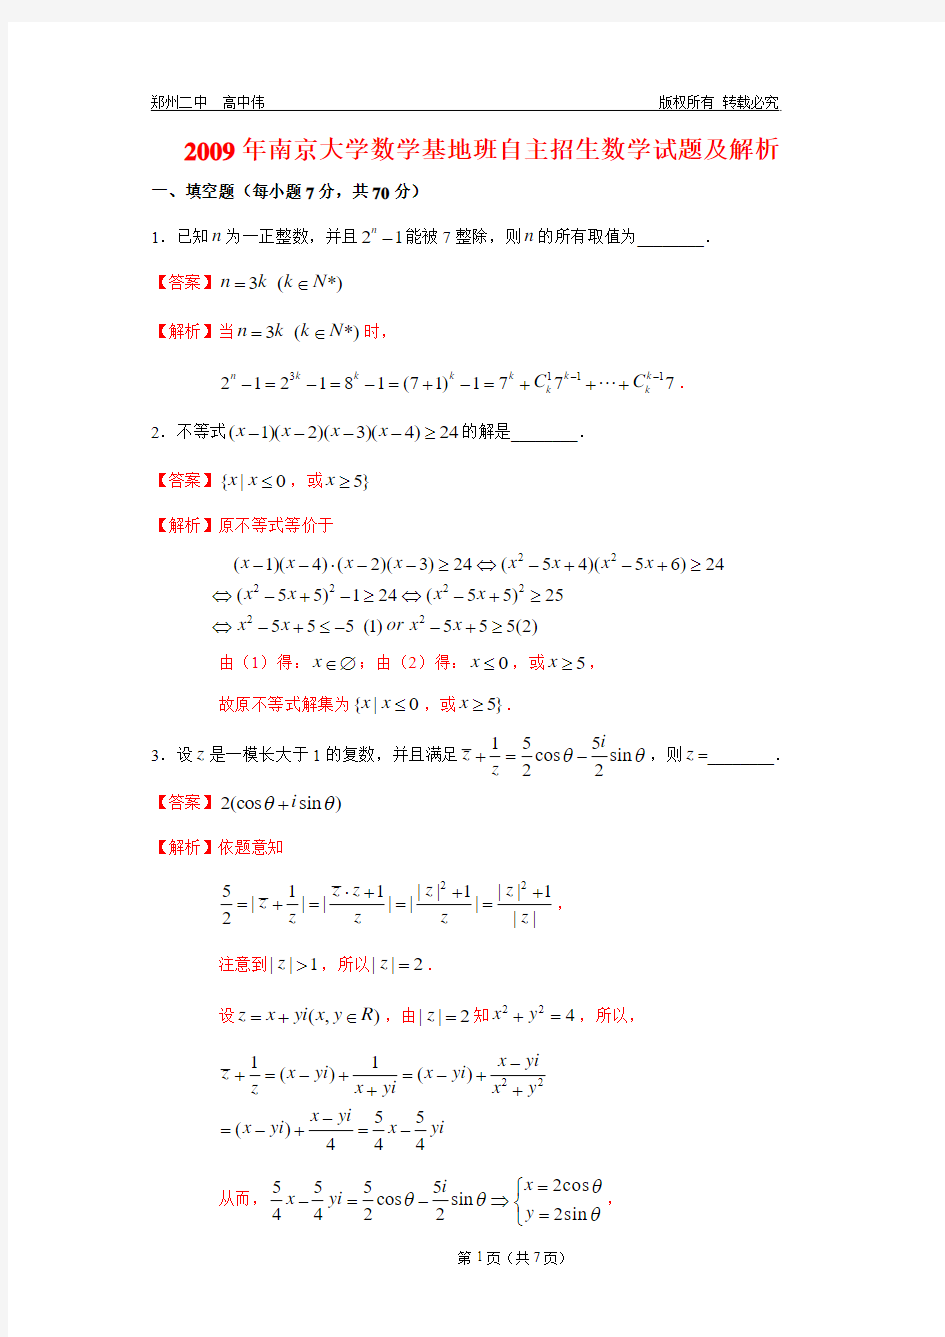 2009年南京大学数学基地班自主招生考试数学试题解析